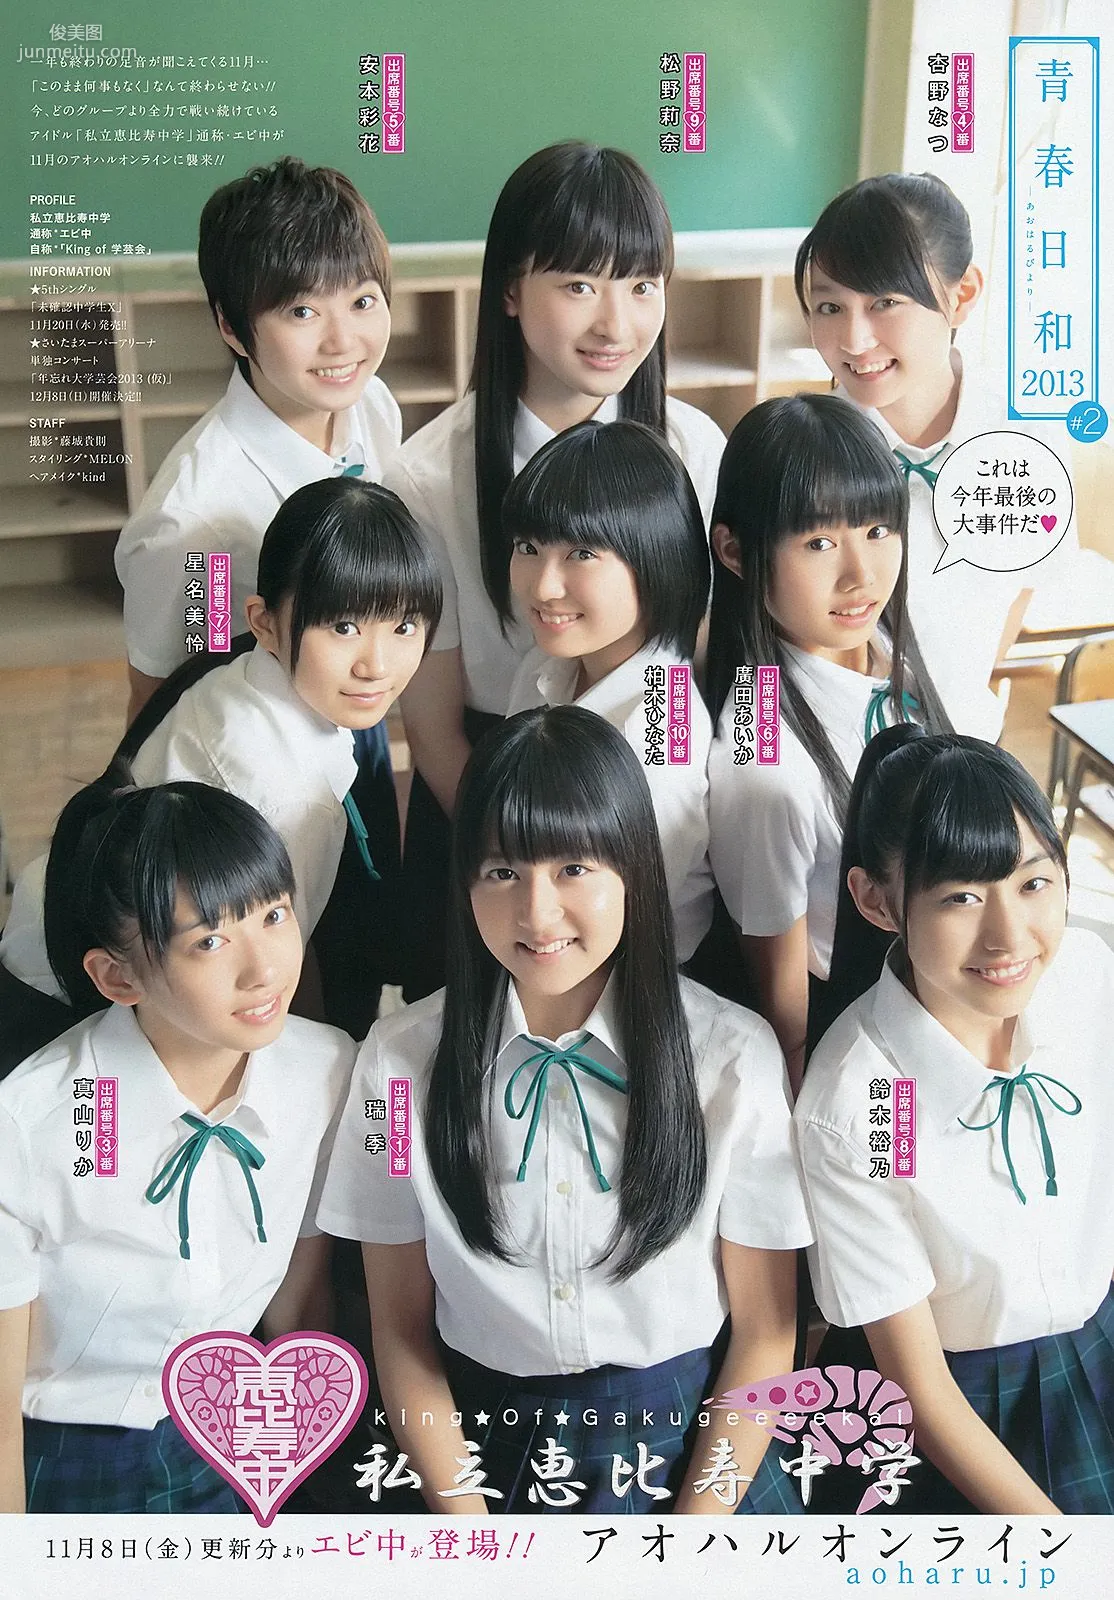 星名美津紀 小嶋真子 [Weekly Young Jump] 2013年No.48 写真杂志14